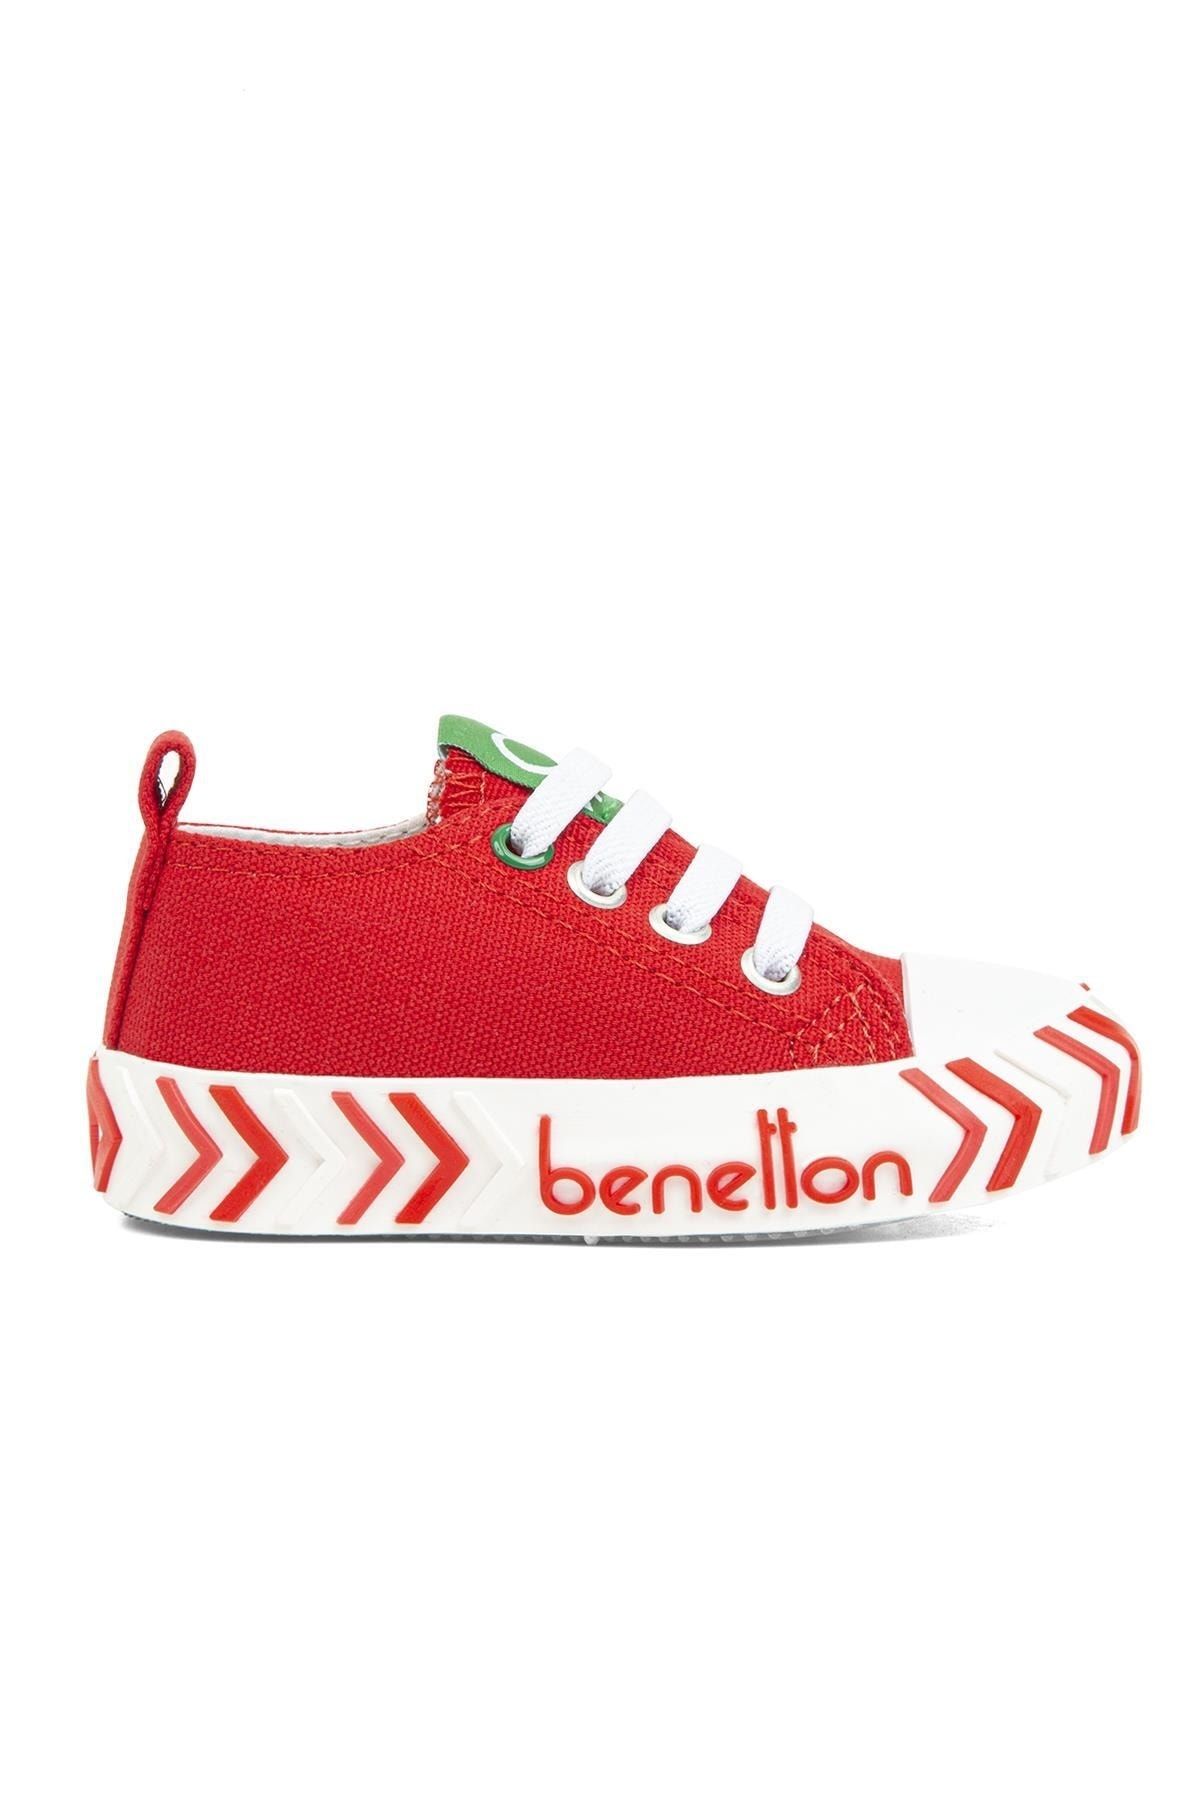 Benetton ® | Bn-30640-kırmızı - Çocuk Spor Ayakkabı